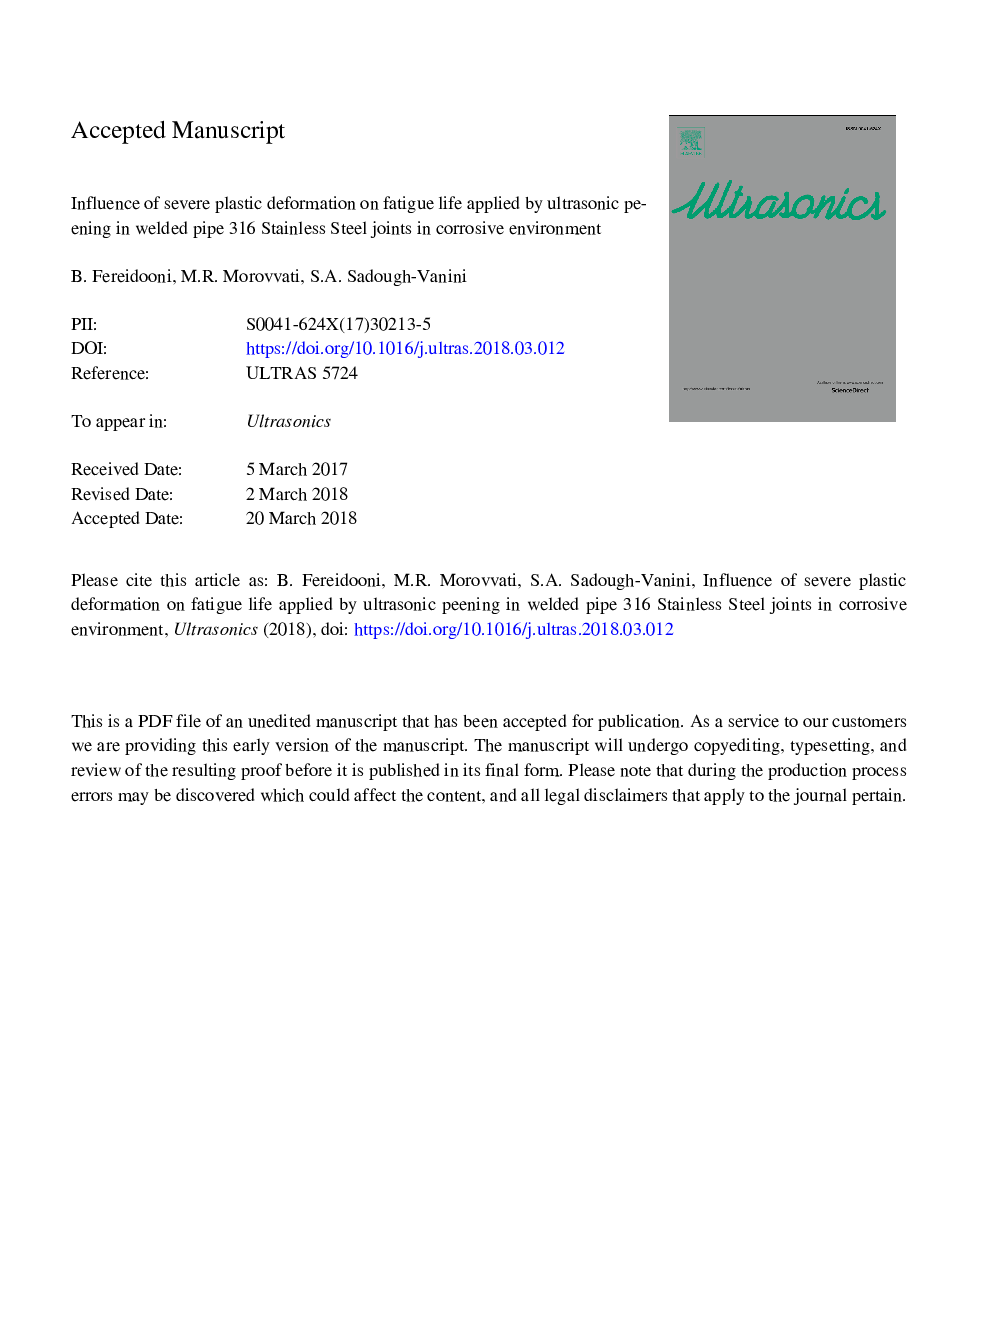 تأثیر تغییر شکل پلاستیک شدید در عمر خستگی ناشی از نفوذ اولتراسونیک در لوله جوش داده شده 316 اتصالات فولادی ضد زنگ در محیط خوردگی 